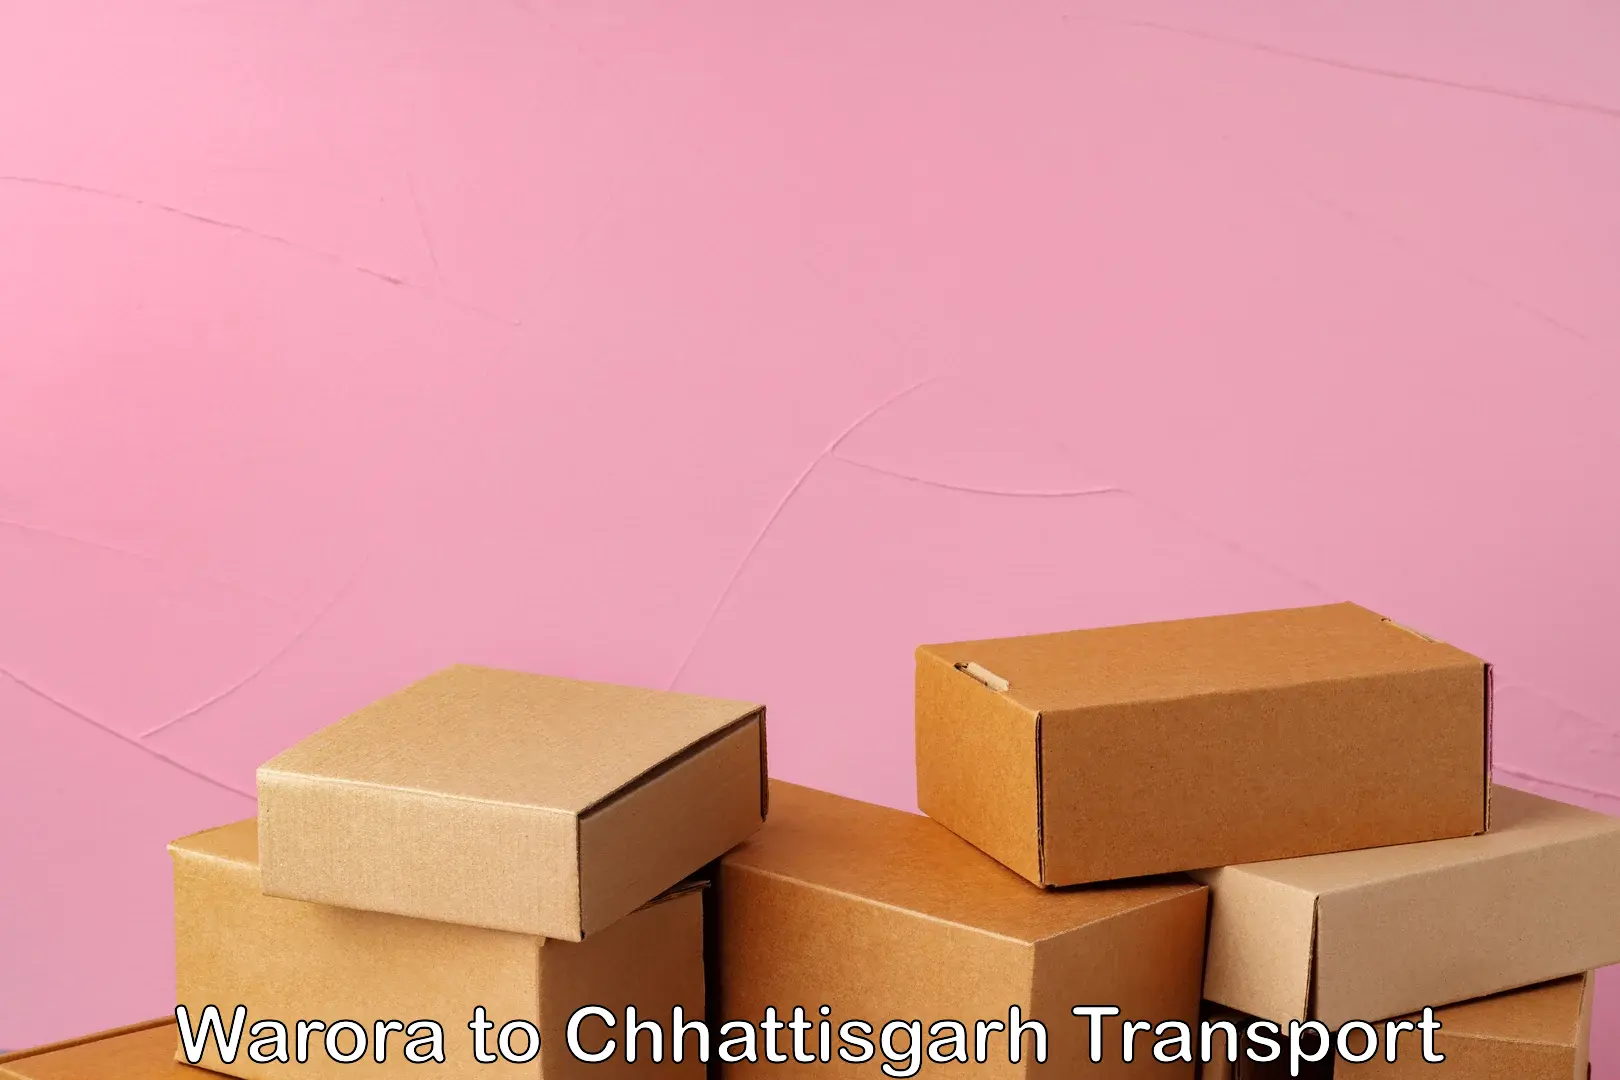 Container transportation services Warora to Chhattisgarh